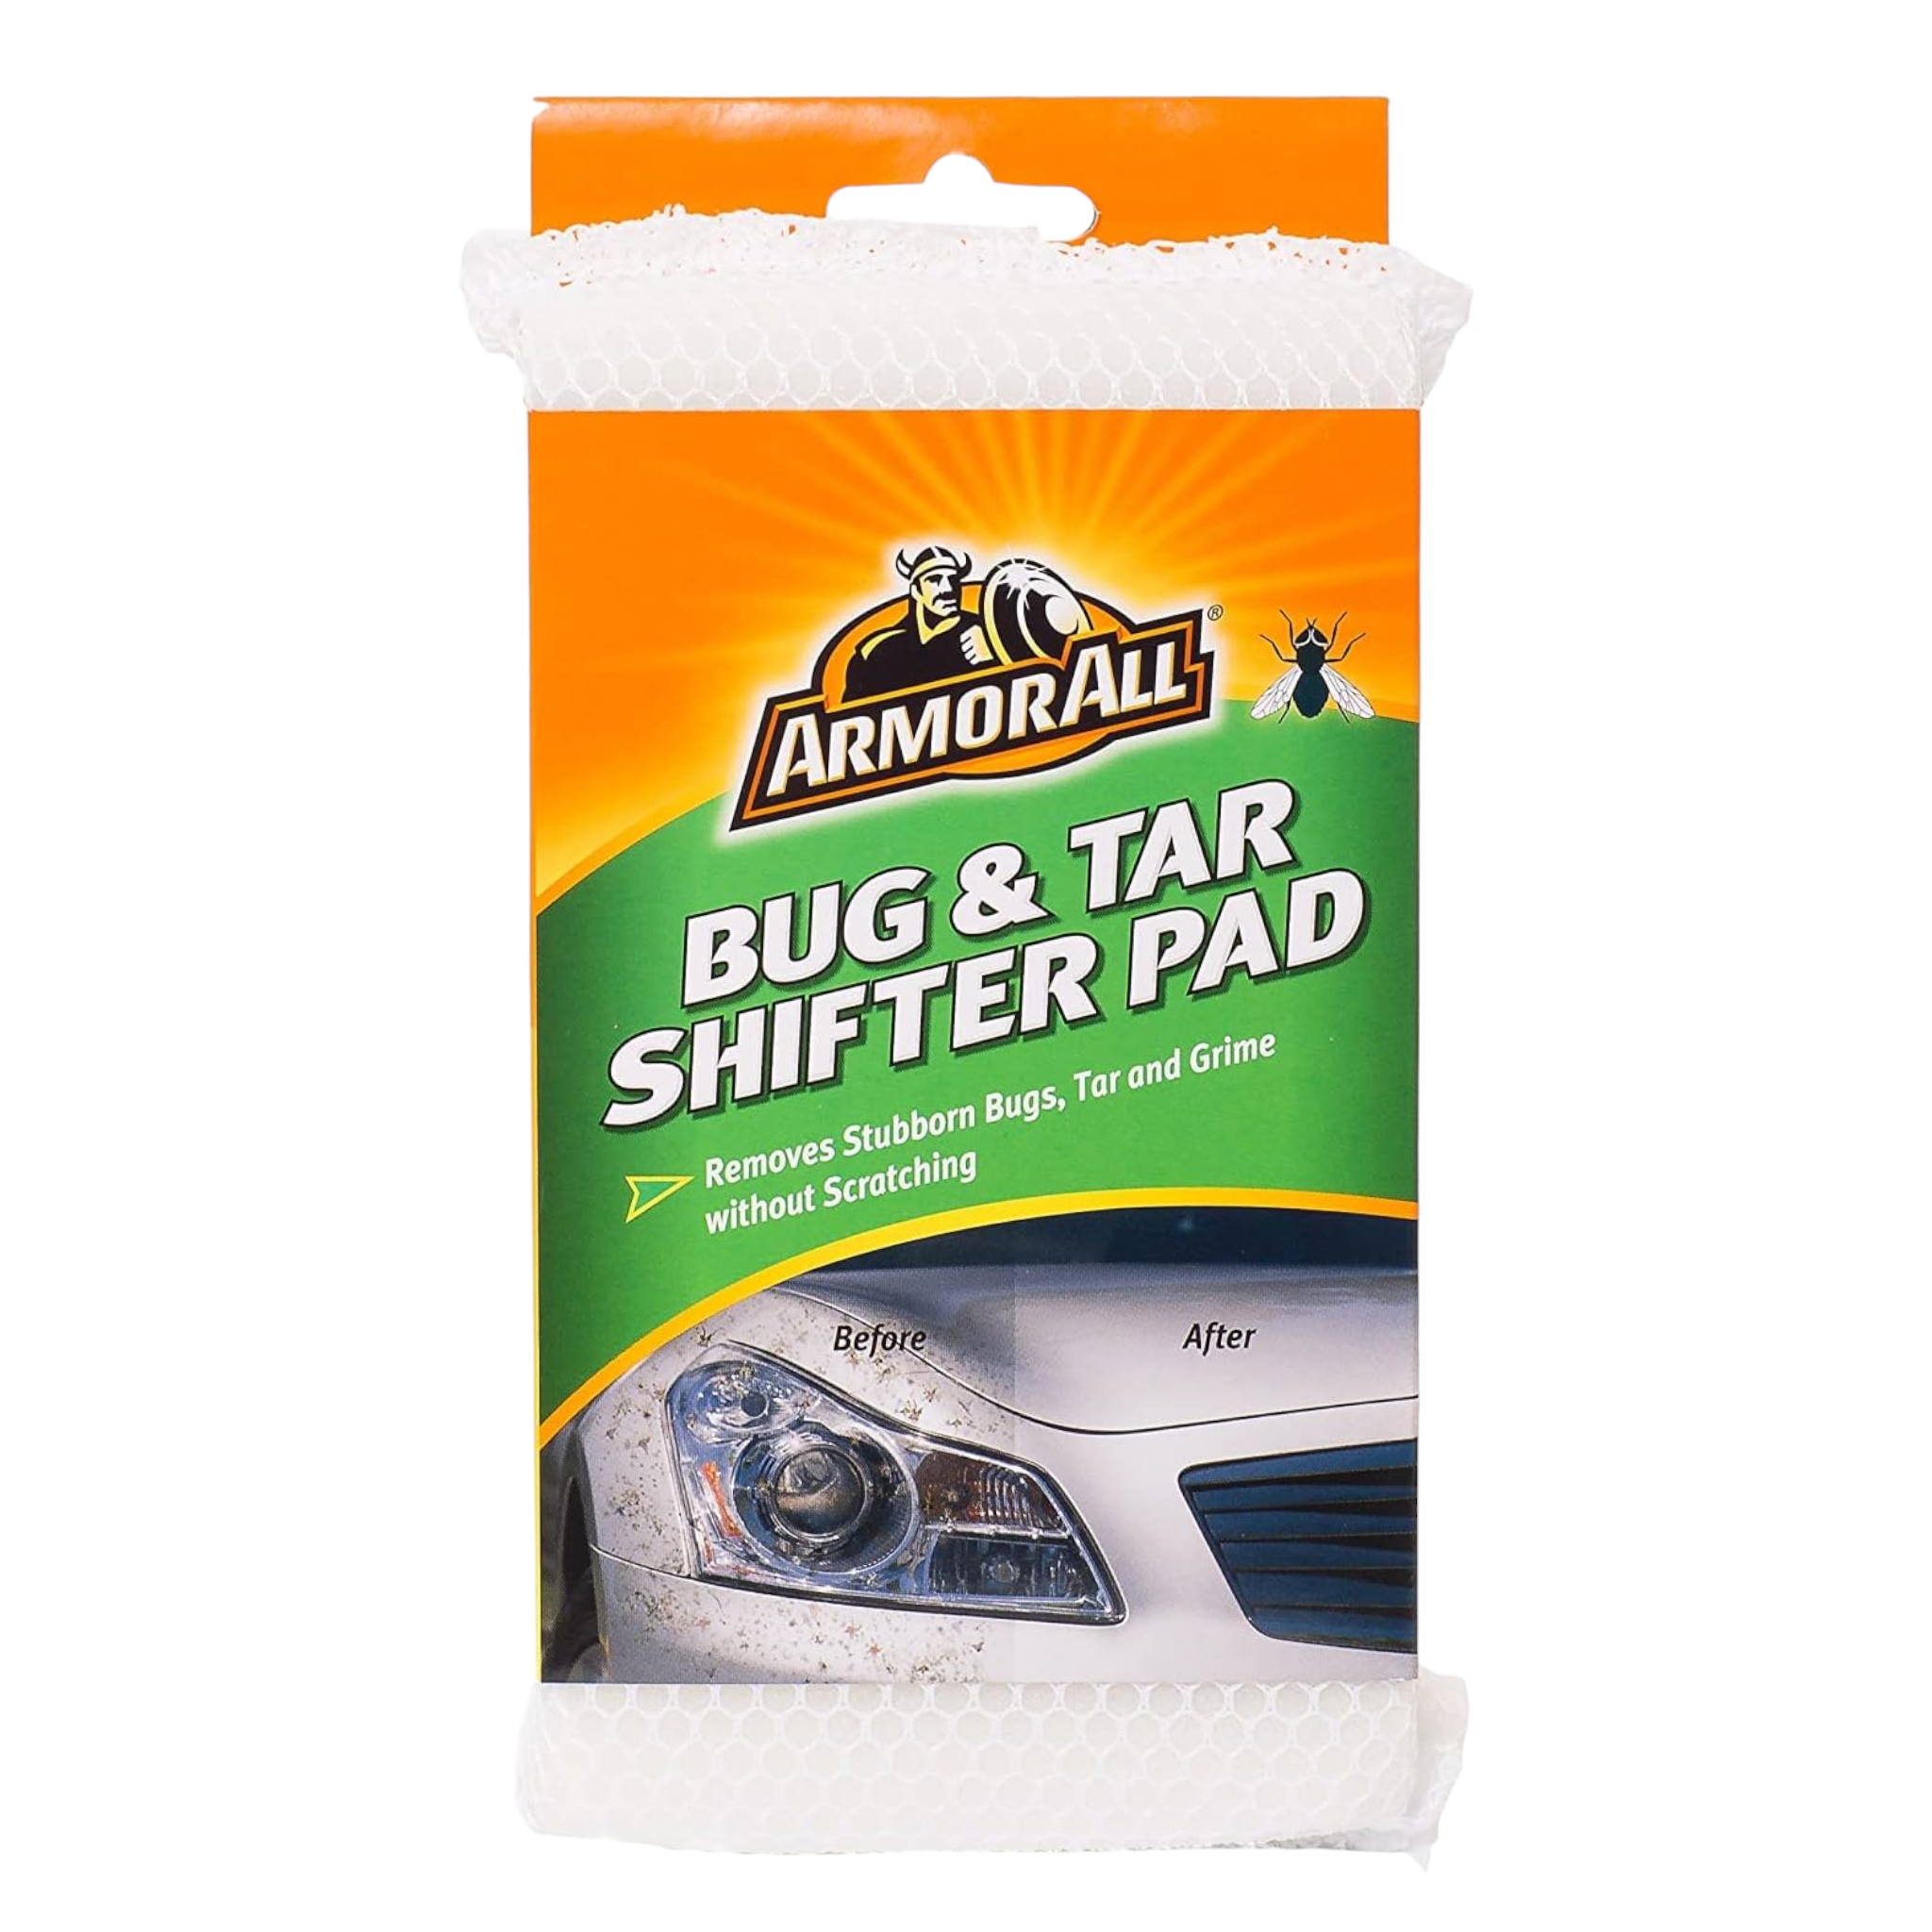 Armorall Bug & Tar Shifter Pad